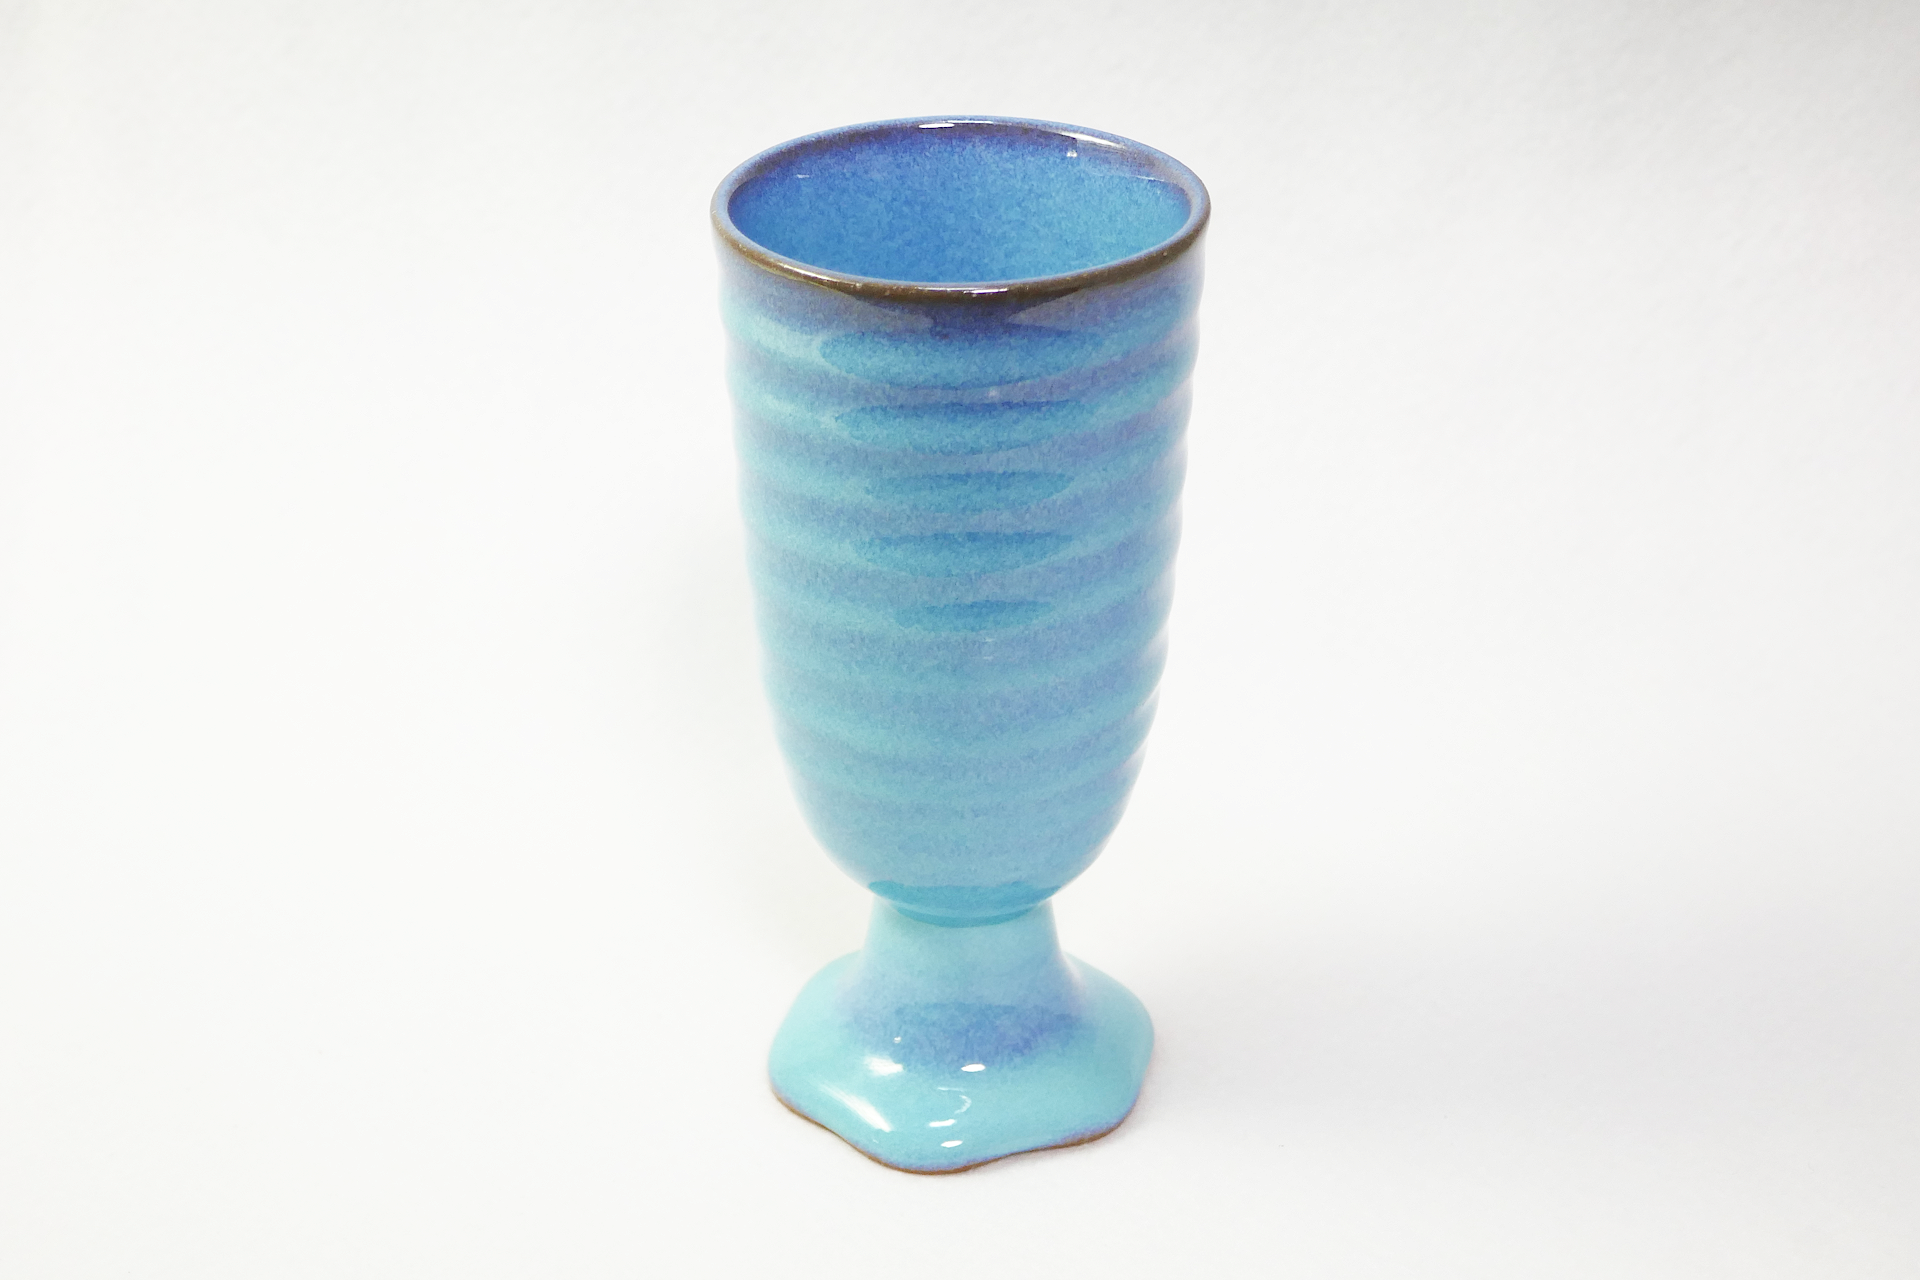 青色から水色の濃淡のある陶製のカップを撮影した写真。 台と一体化した太く短い脚に深くて長い容器が付いている。